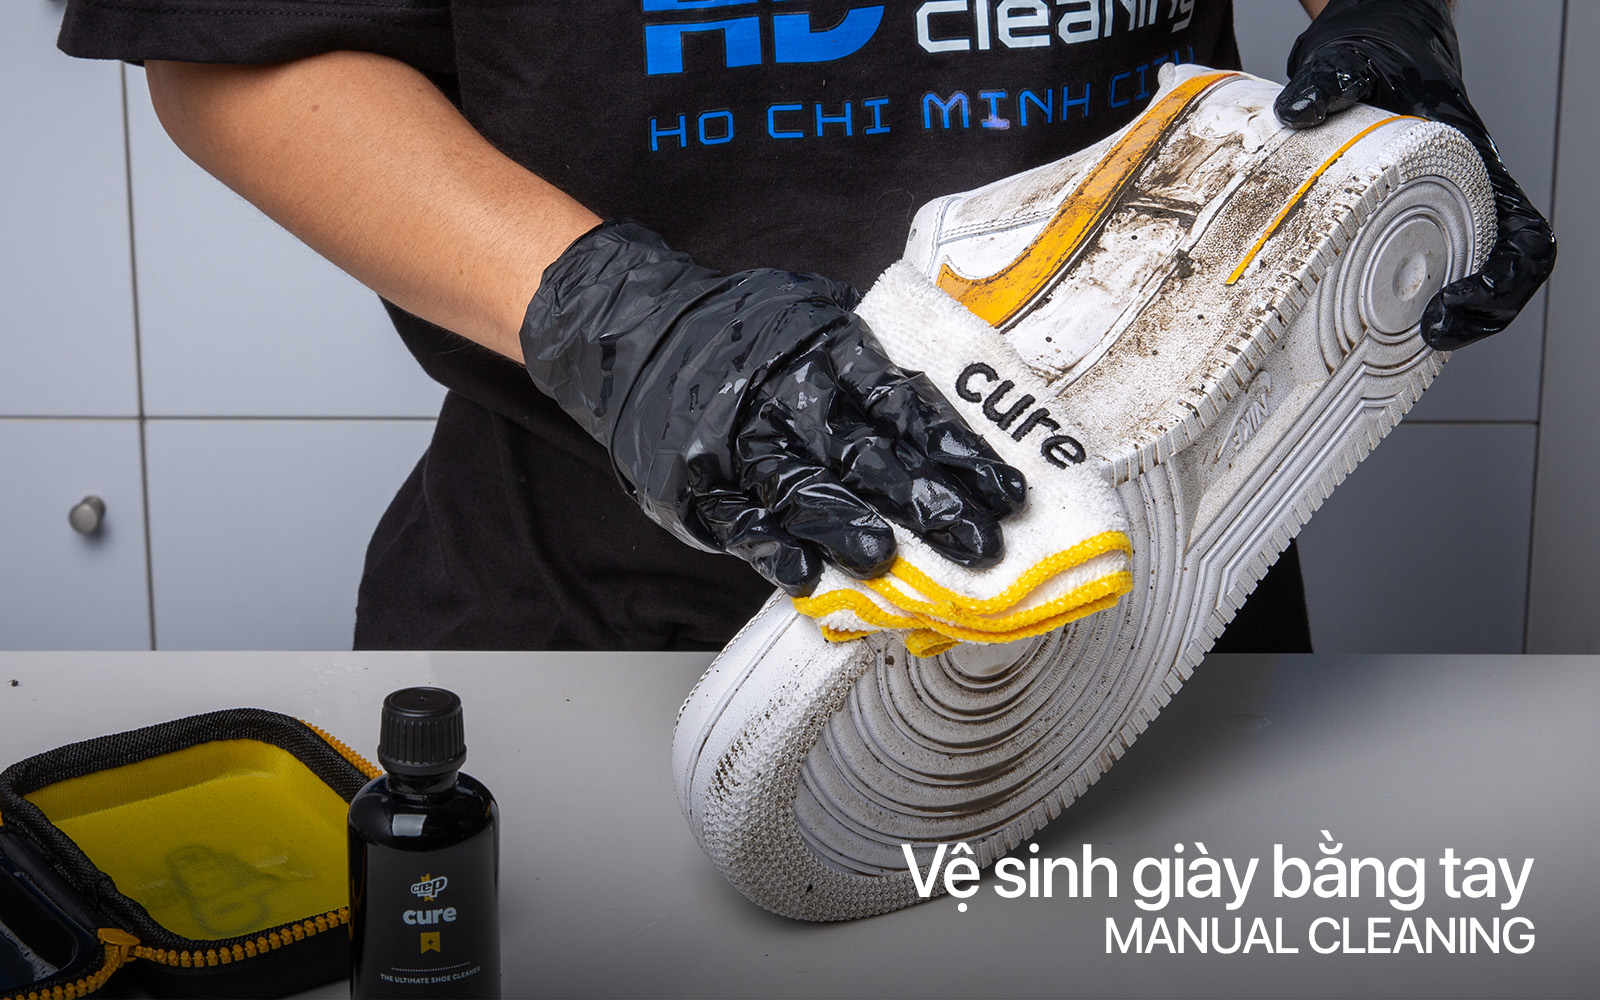 HD Services vệ sinh giày bằng tay